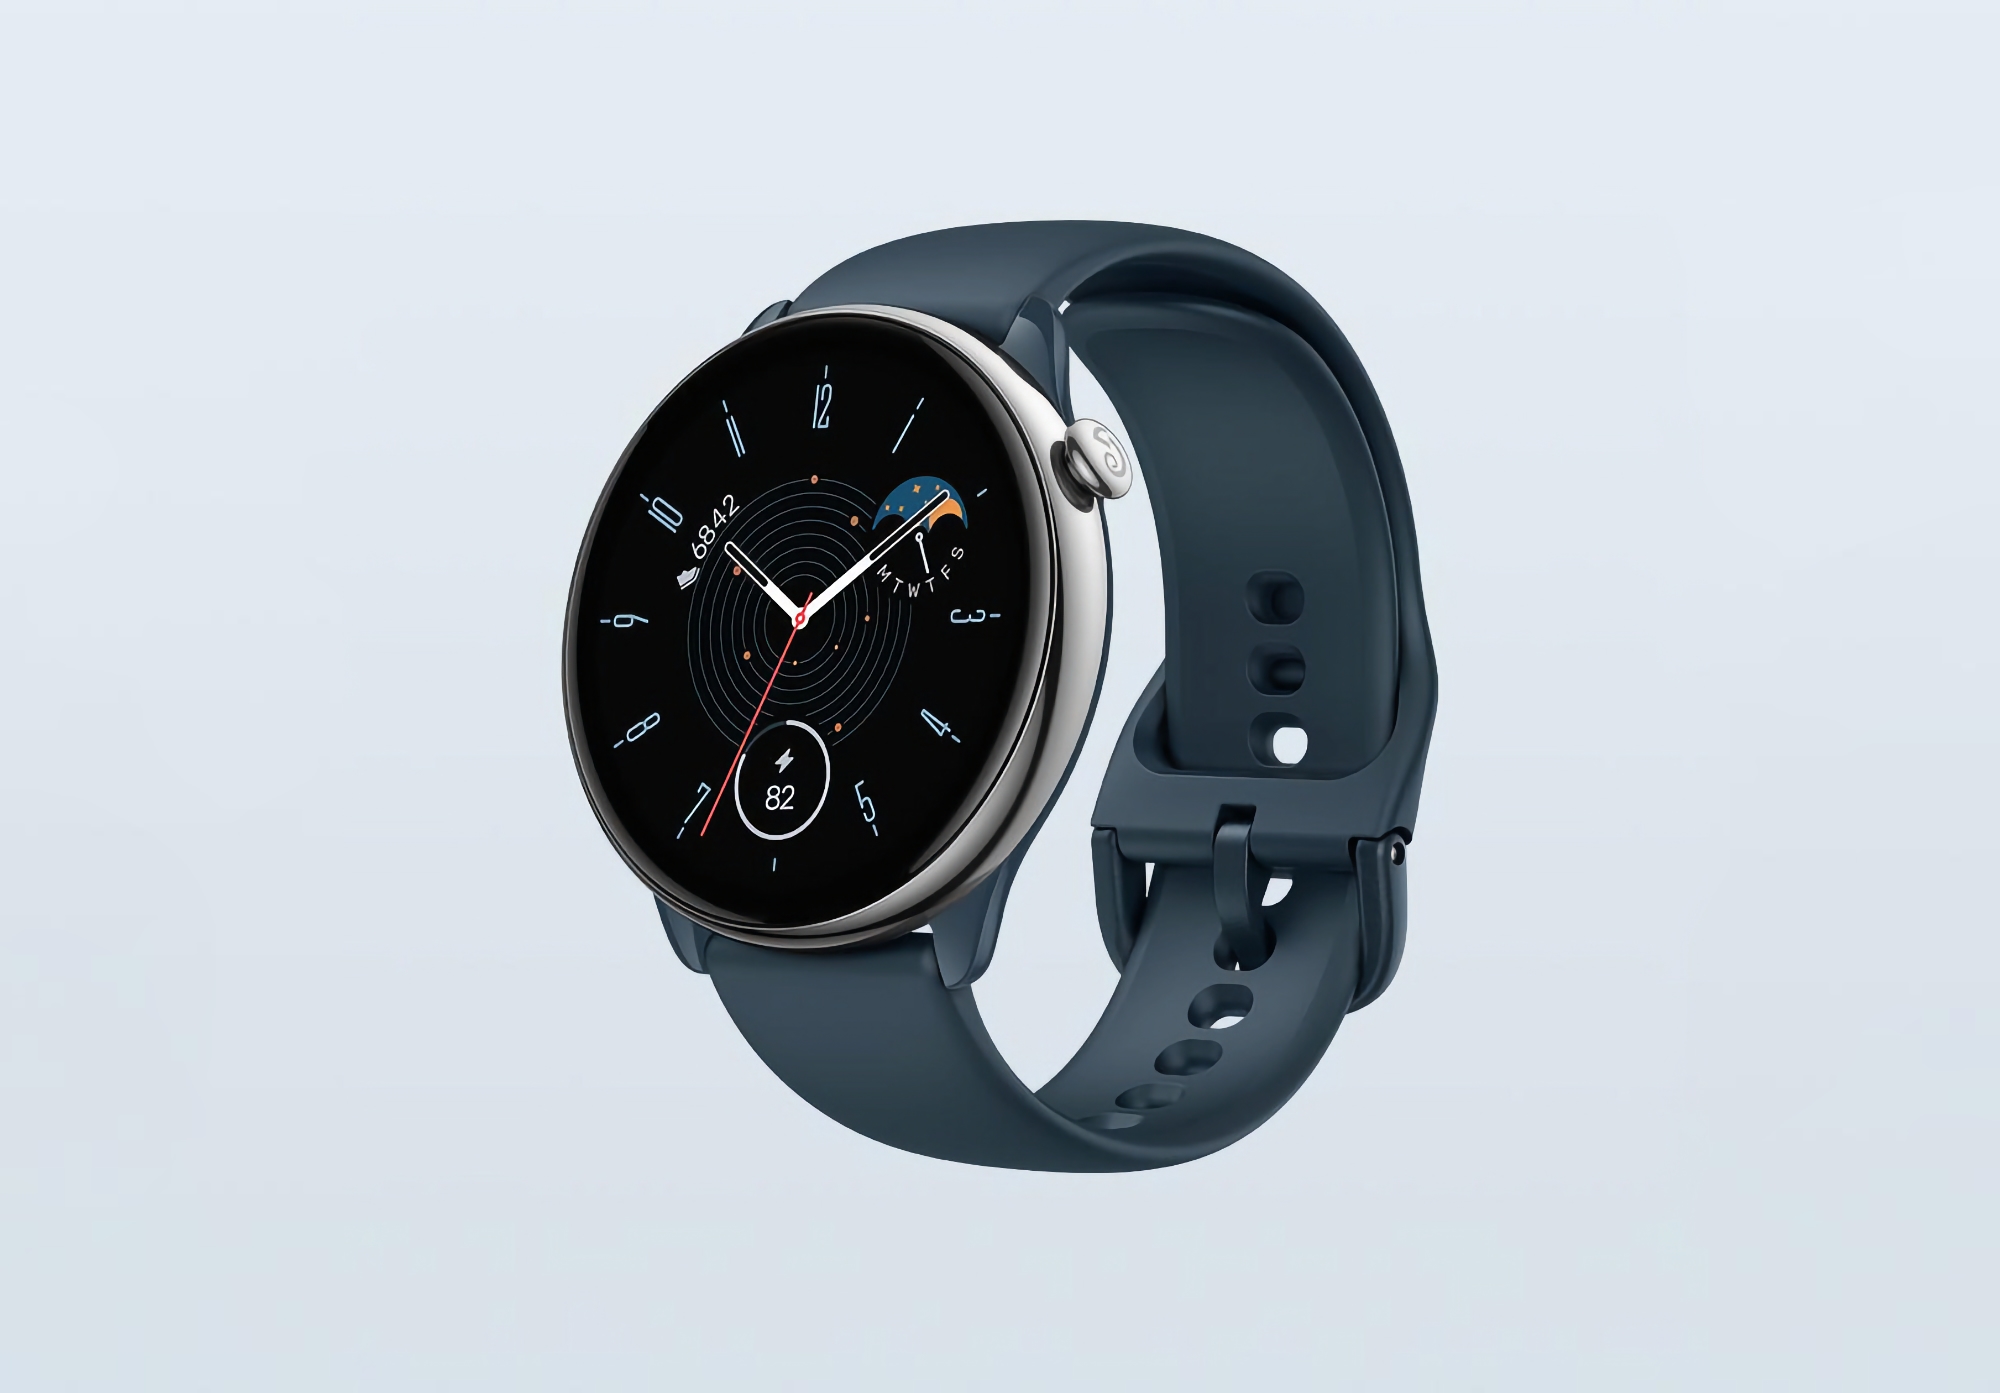 Amazfit GTR Mini sur Amazon : une smartwatch avec écran AMOLED, GPS et jusqu'à 20 jours d'autonomie pour 99 $ (20 $ de réduction)